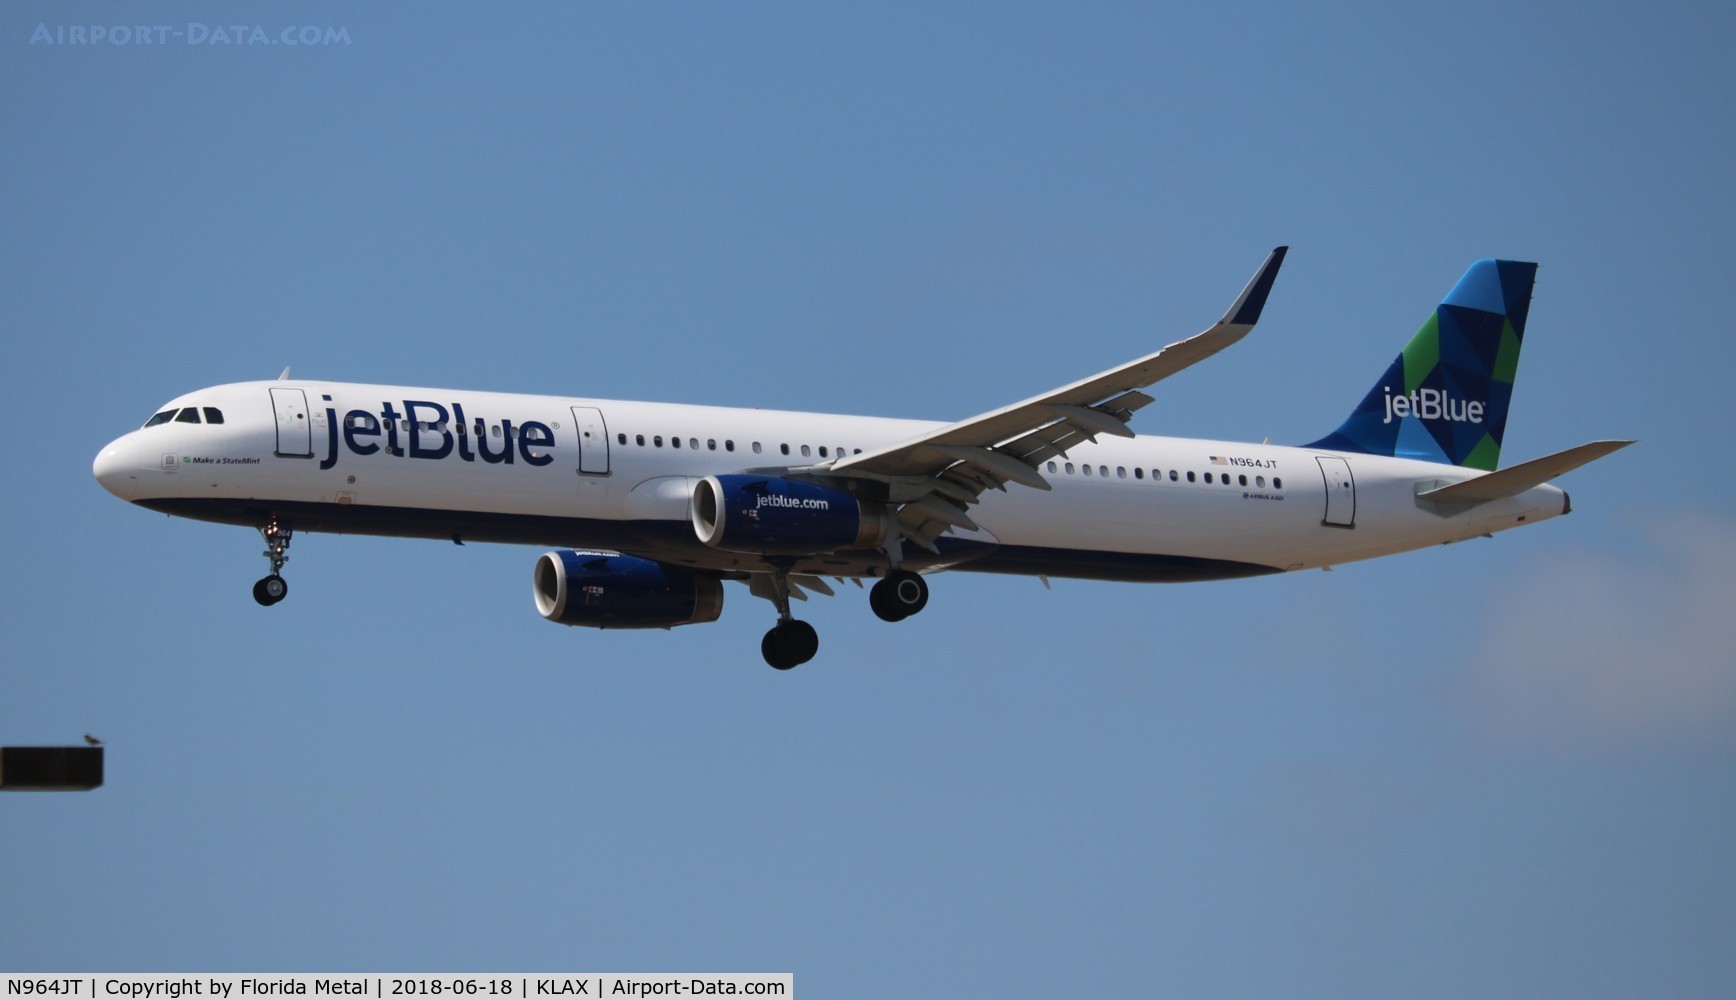 N964JT, 2016 Airbus A321-231 C/N 7018, JetBlue